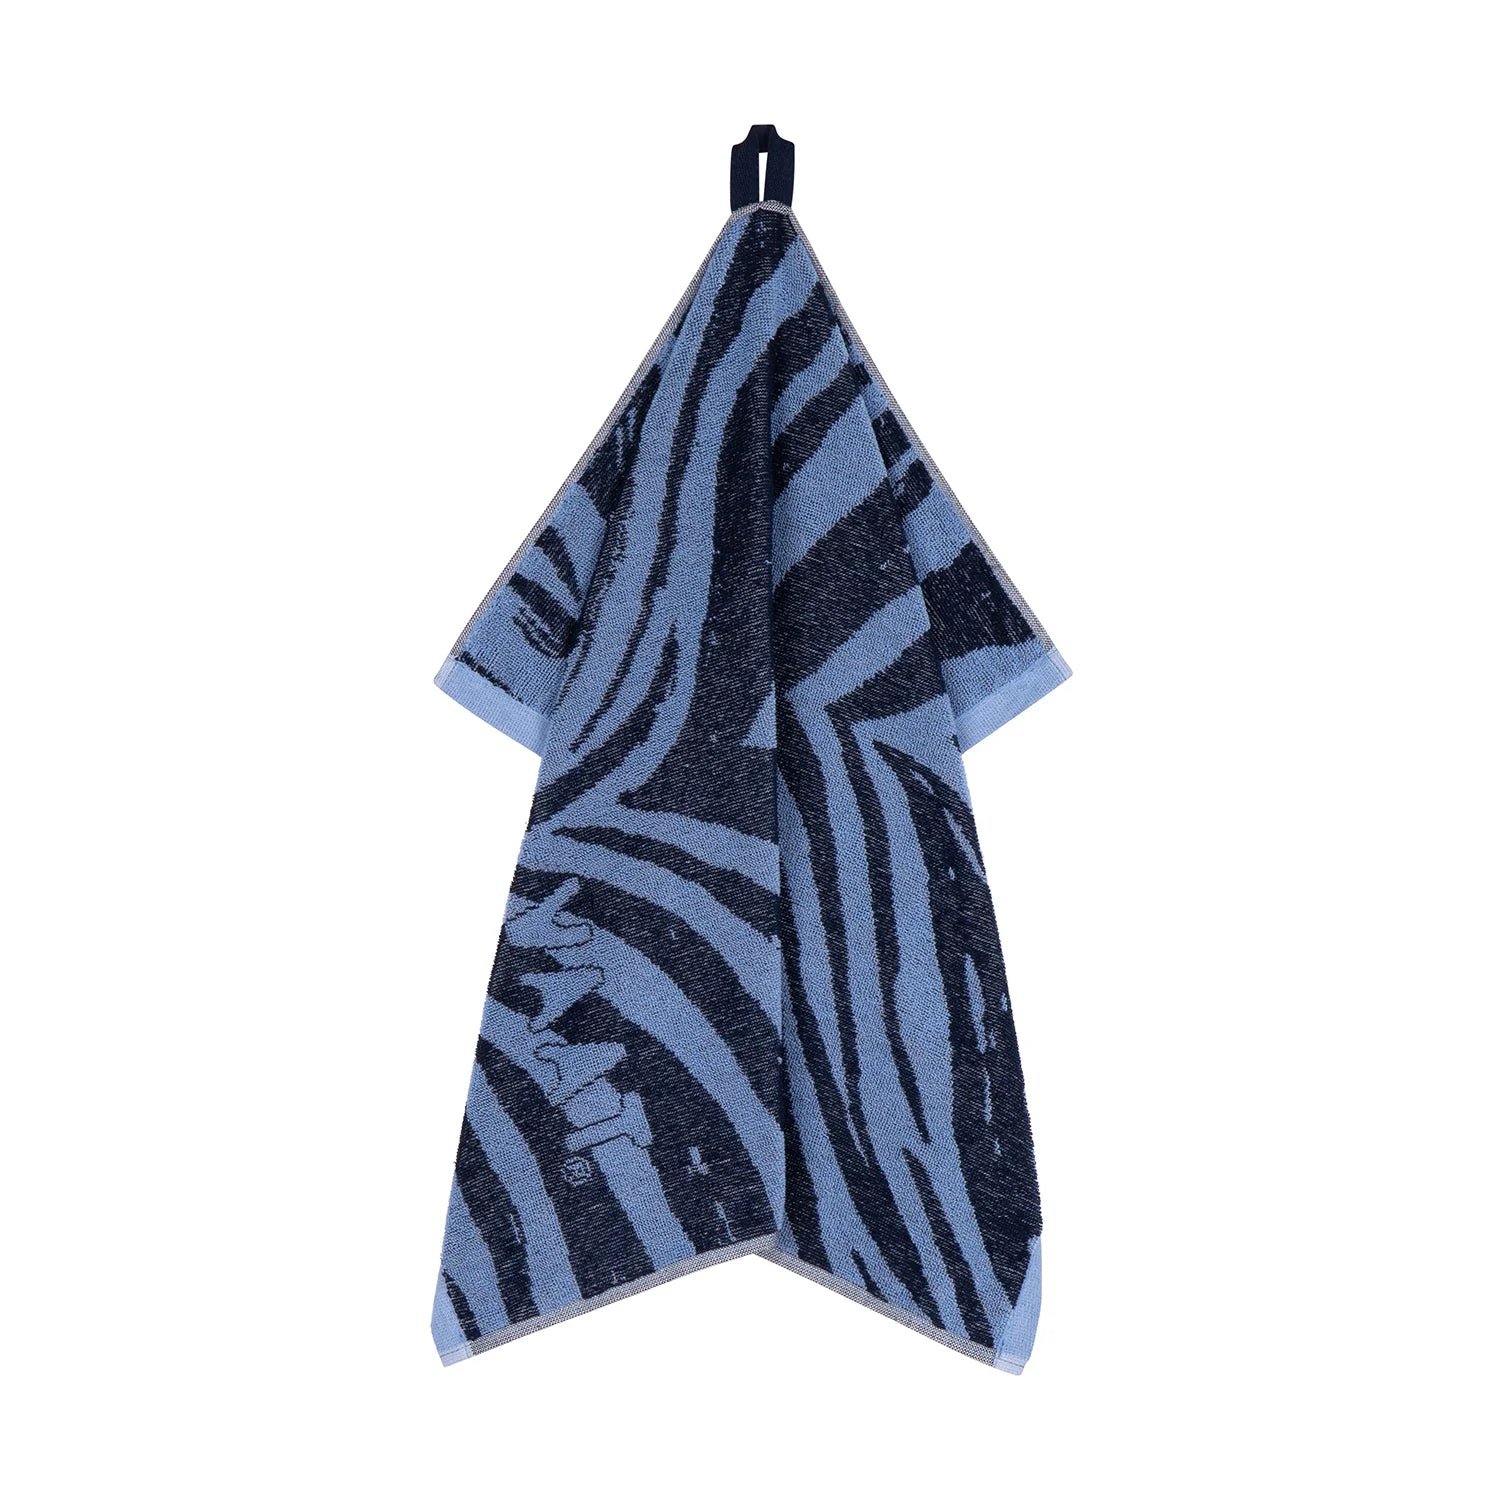 Handdoeken set ZEBRA denim blauw - RUBY Conceptstore 